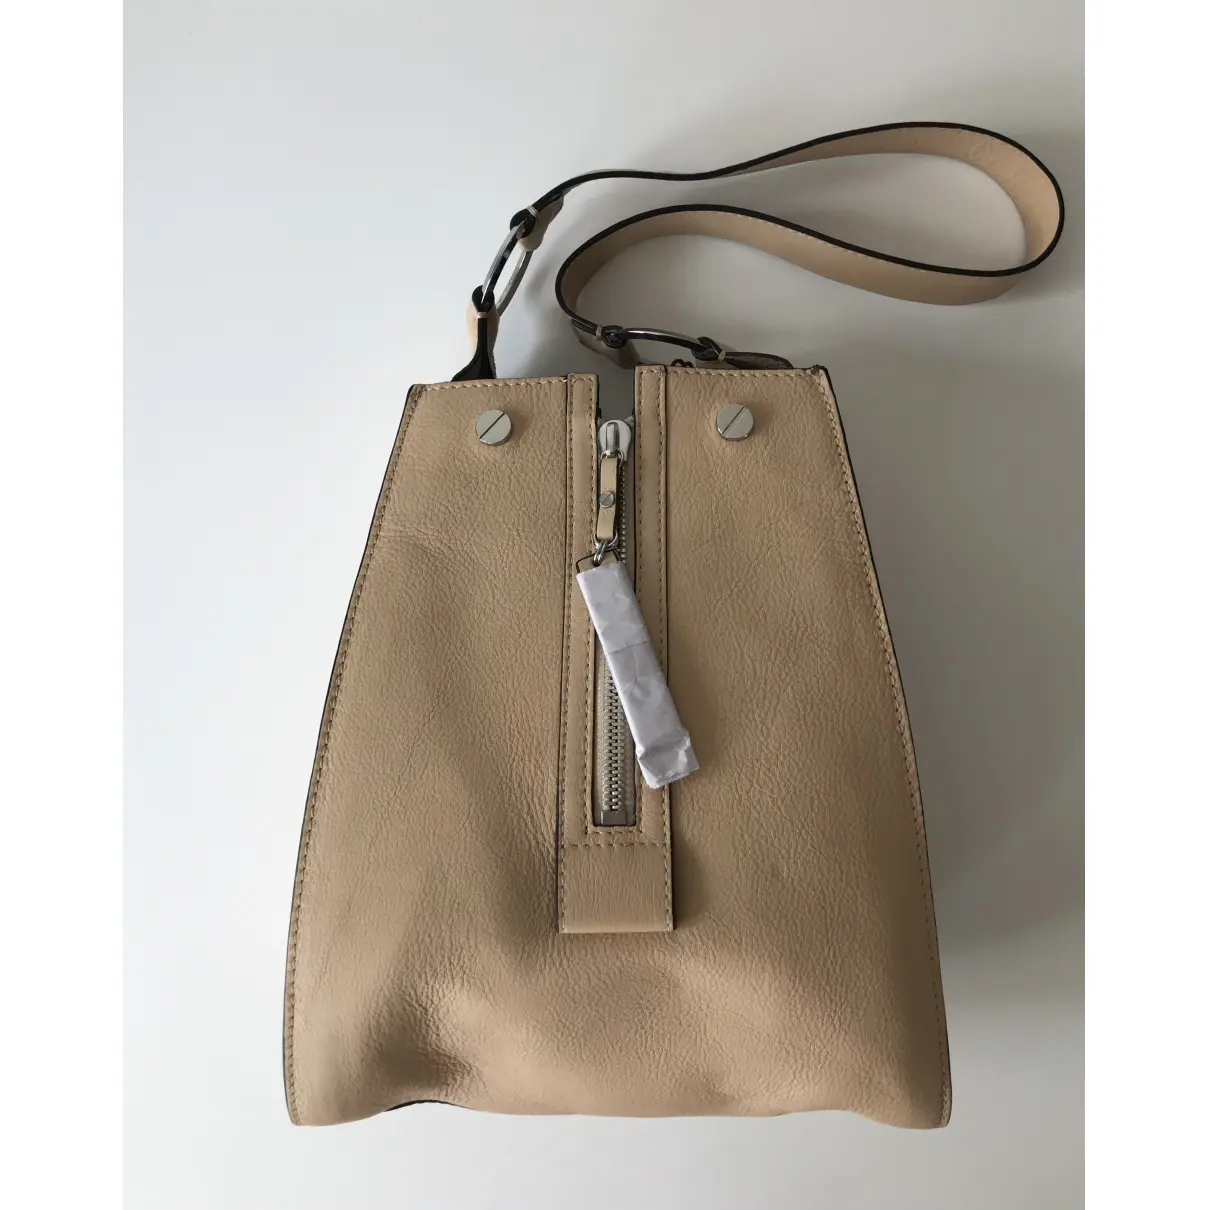 Buy LIEBESKIND Leather handbag online